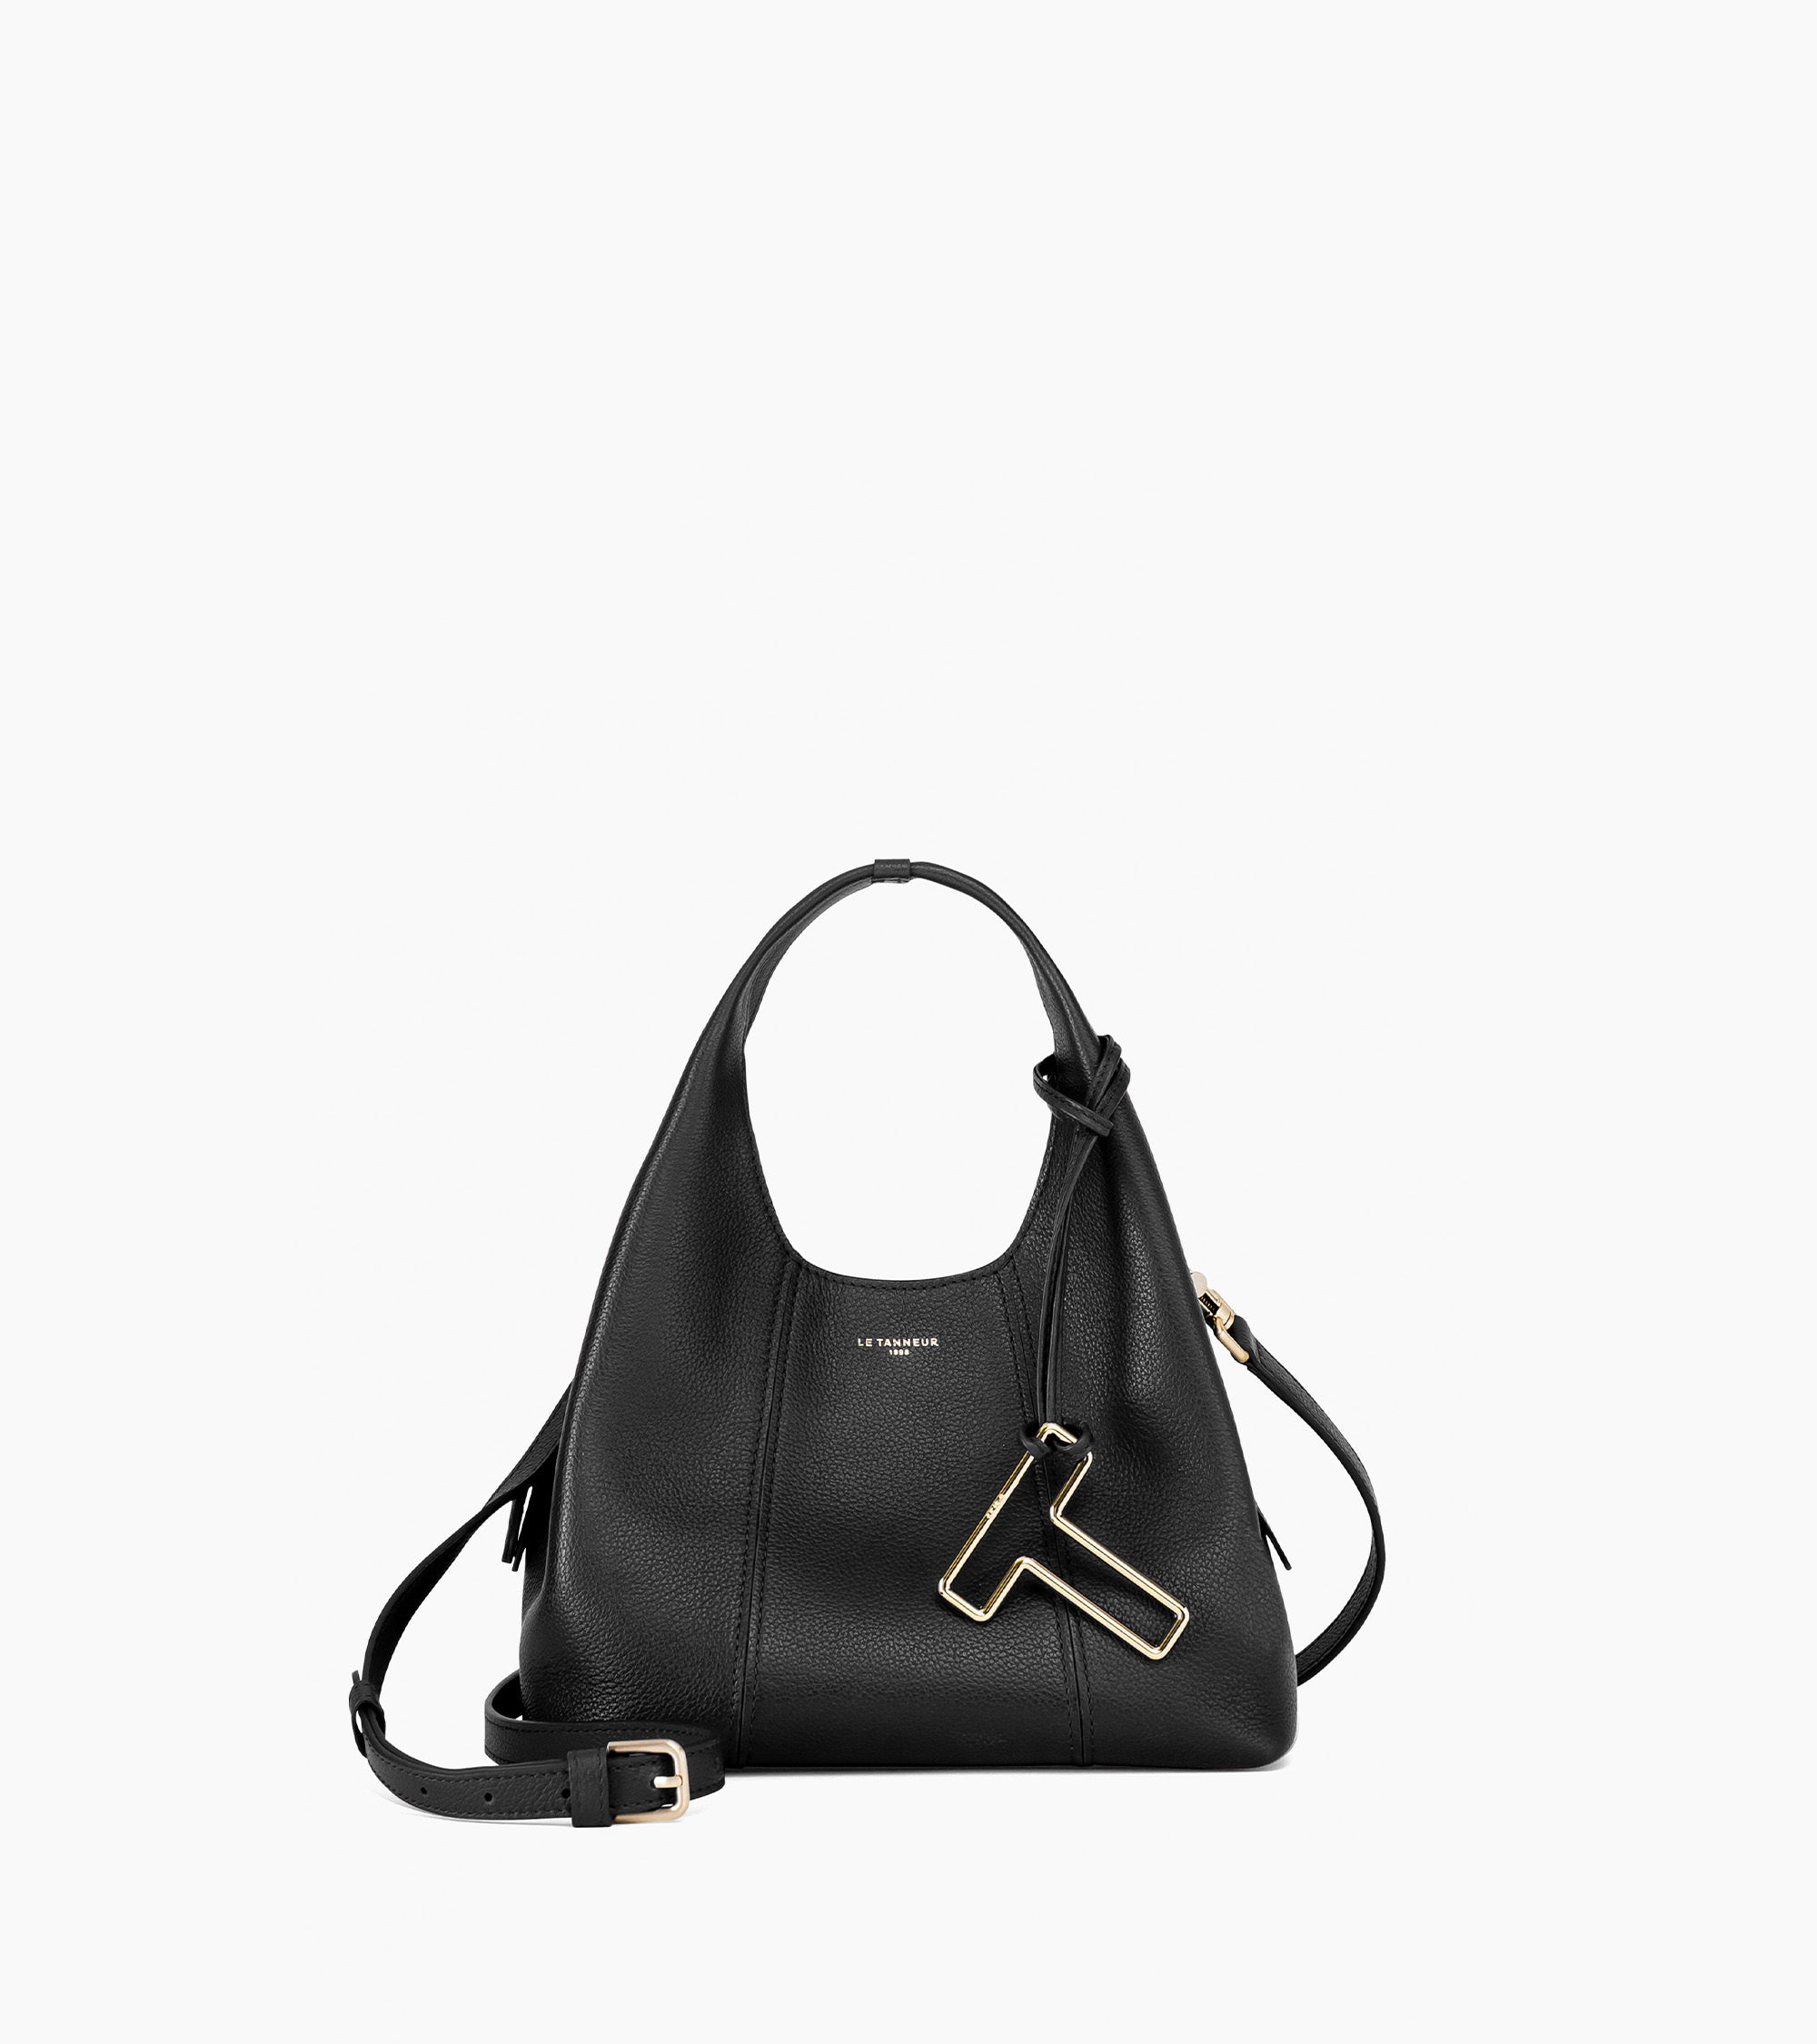 Small Juliette pebbled leather handbag